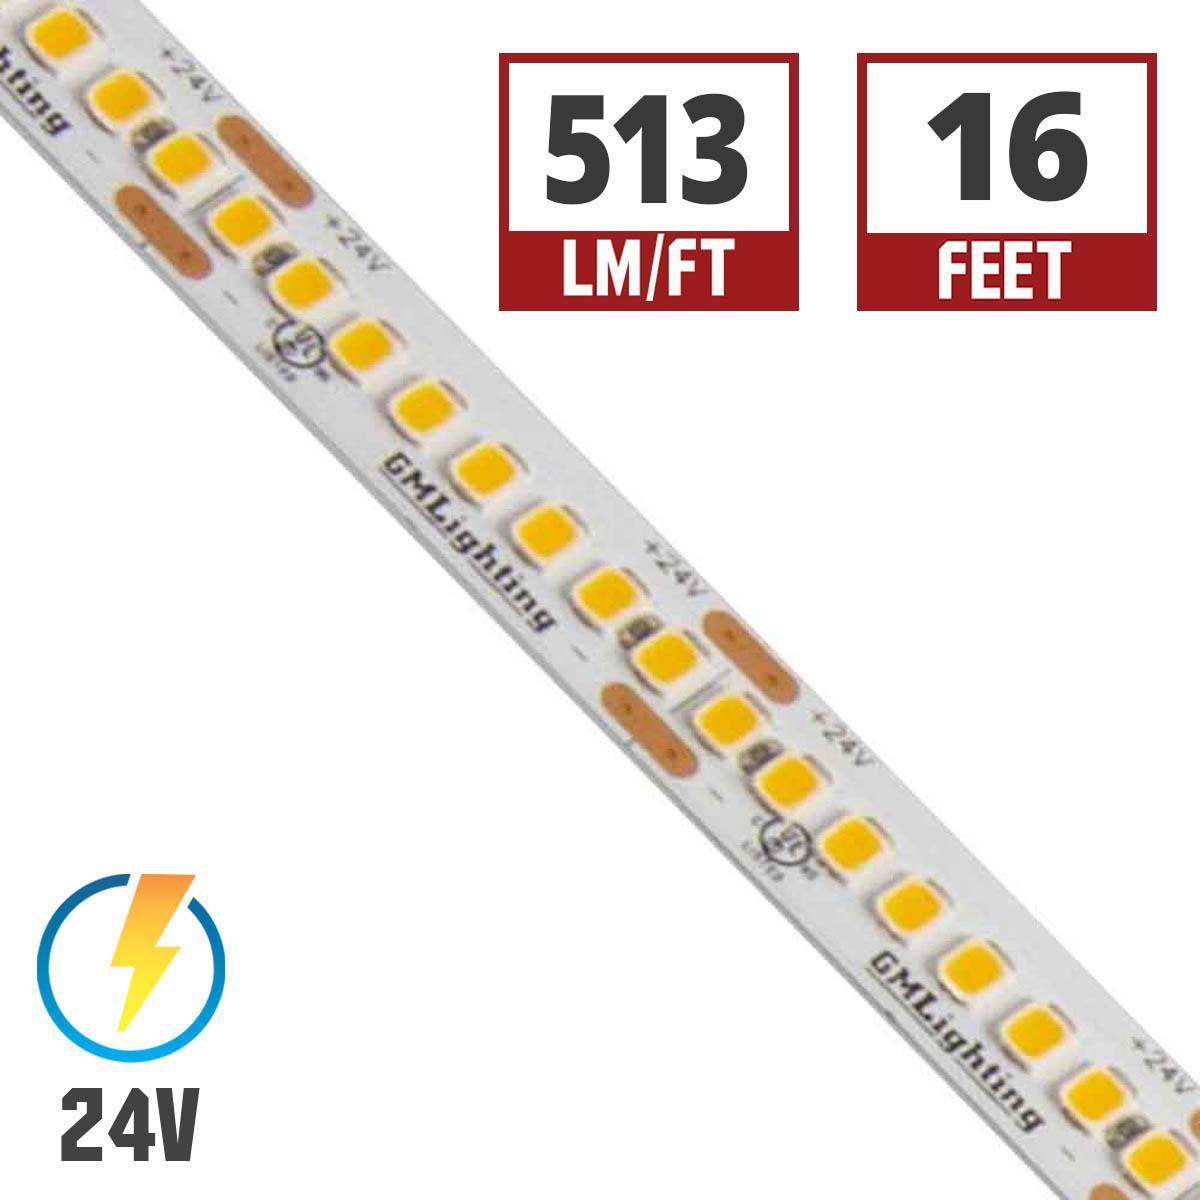 LTR-S Spec LED Strip Light, 510 Lumens per Ft, 5.8 watts per Ft, 24V - Bees Lighting